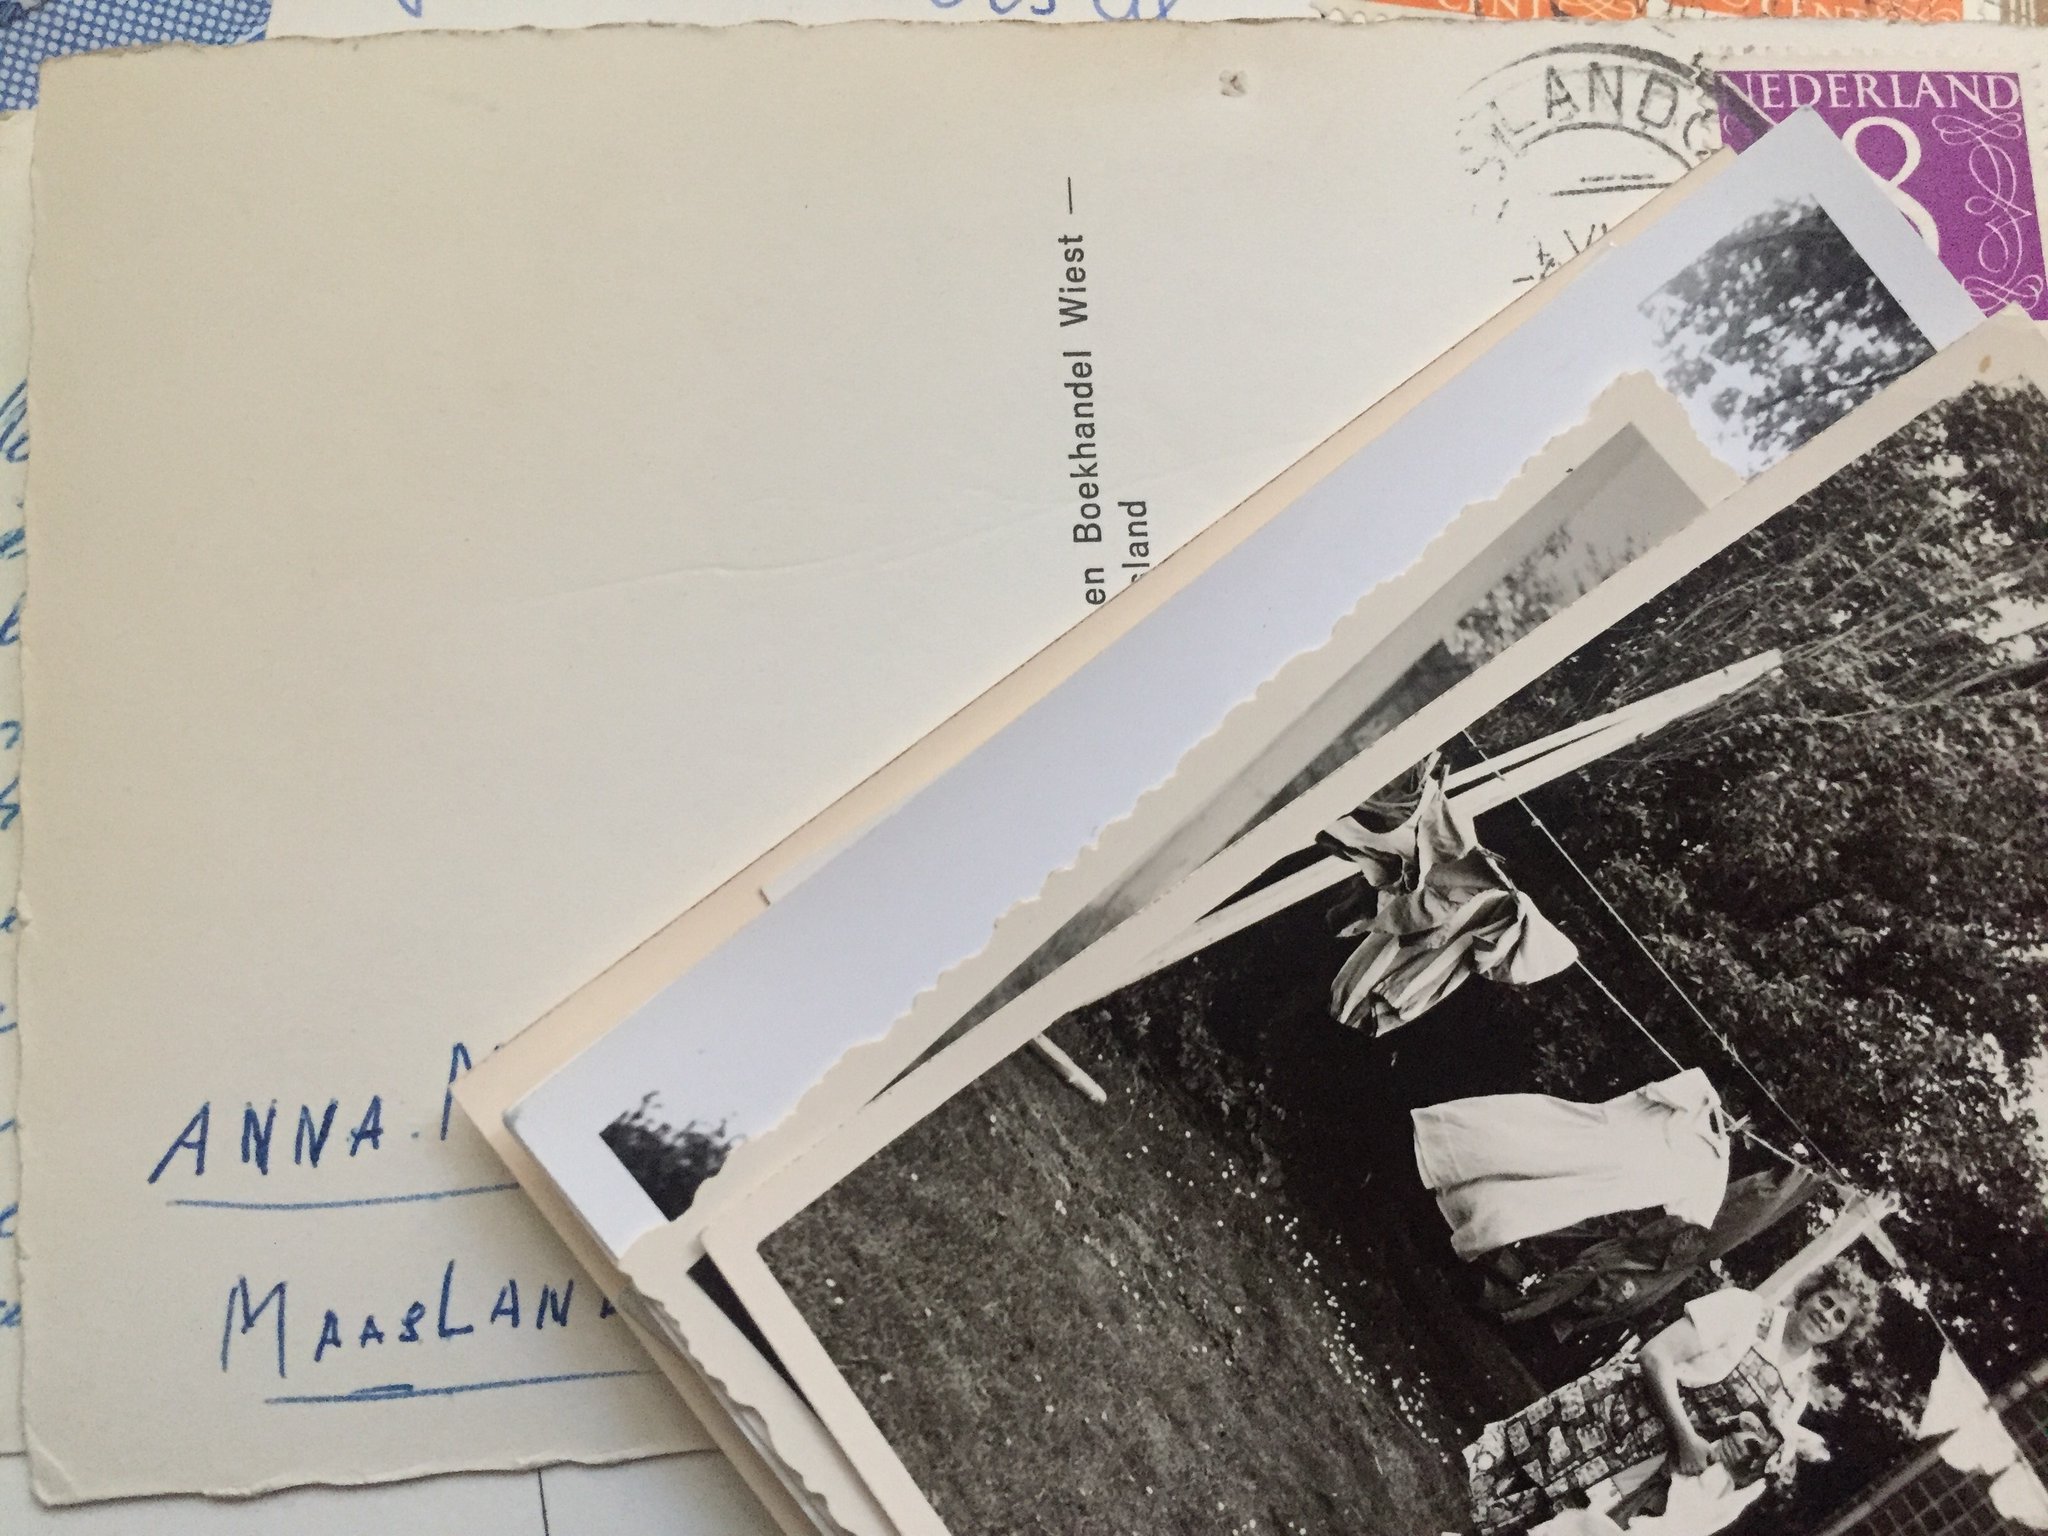 J'ai dans la cave une carte postale d'Anna : elle te l'a envoyée en 1962, simplement signée, sans rien écrit de plus. Comme une pensée de Maasland https://t.co/XAK5Uj76g8